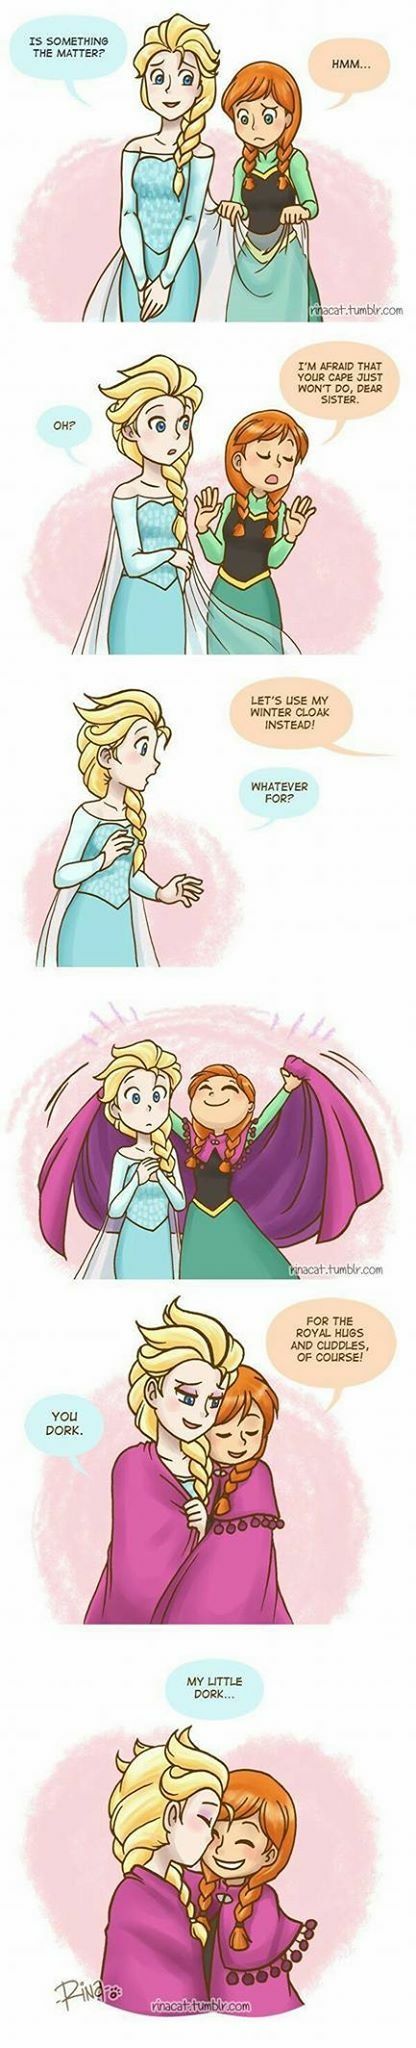 Fan-arts de La Reine des Neiges (trouvés sur internet) - Page 4 Frozen11